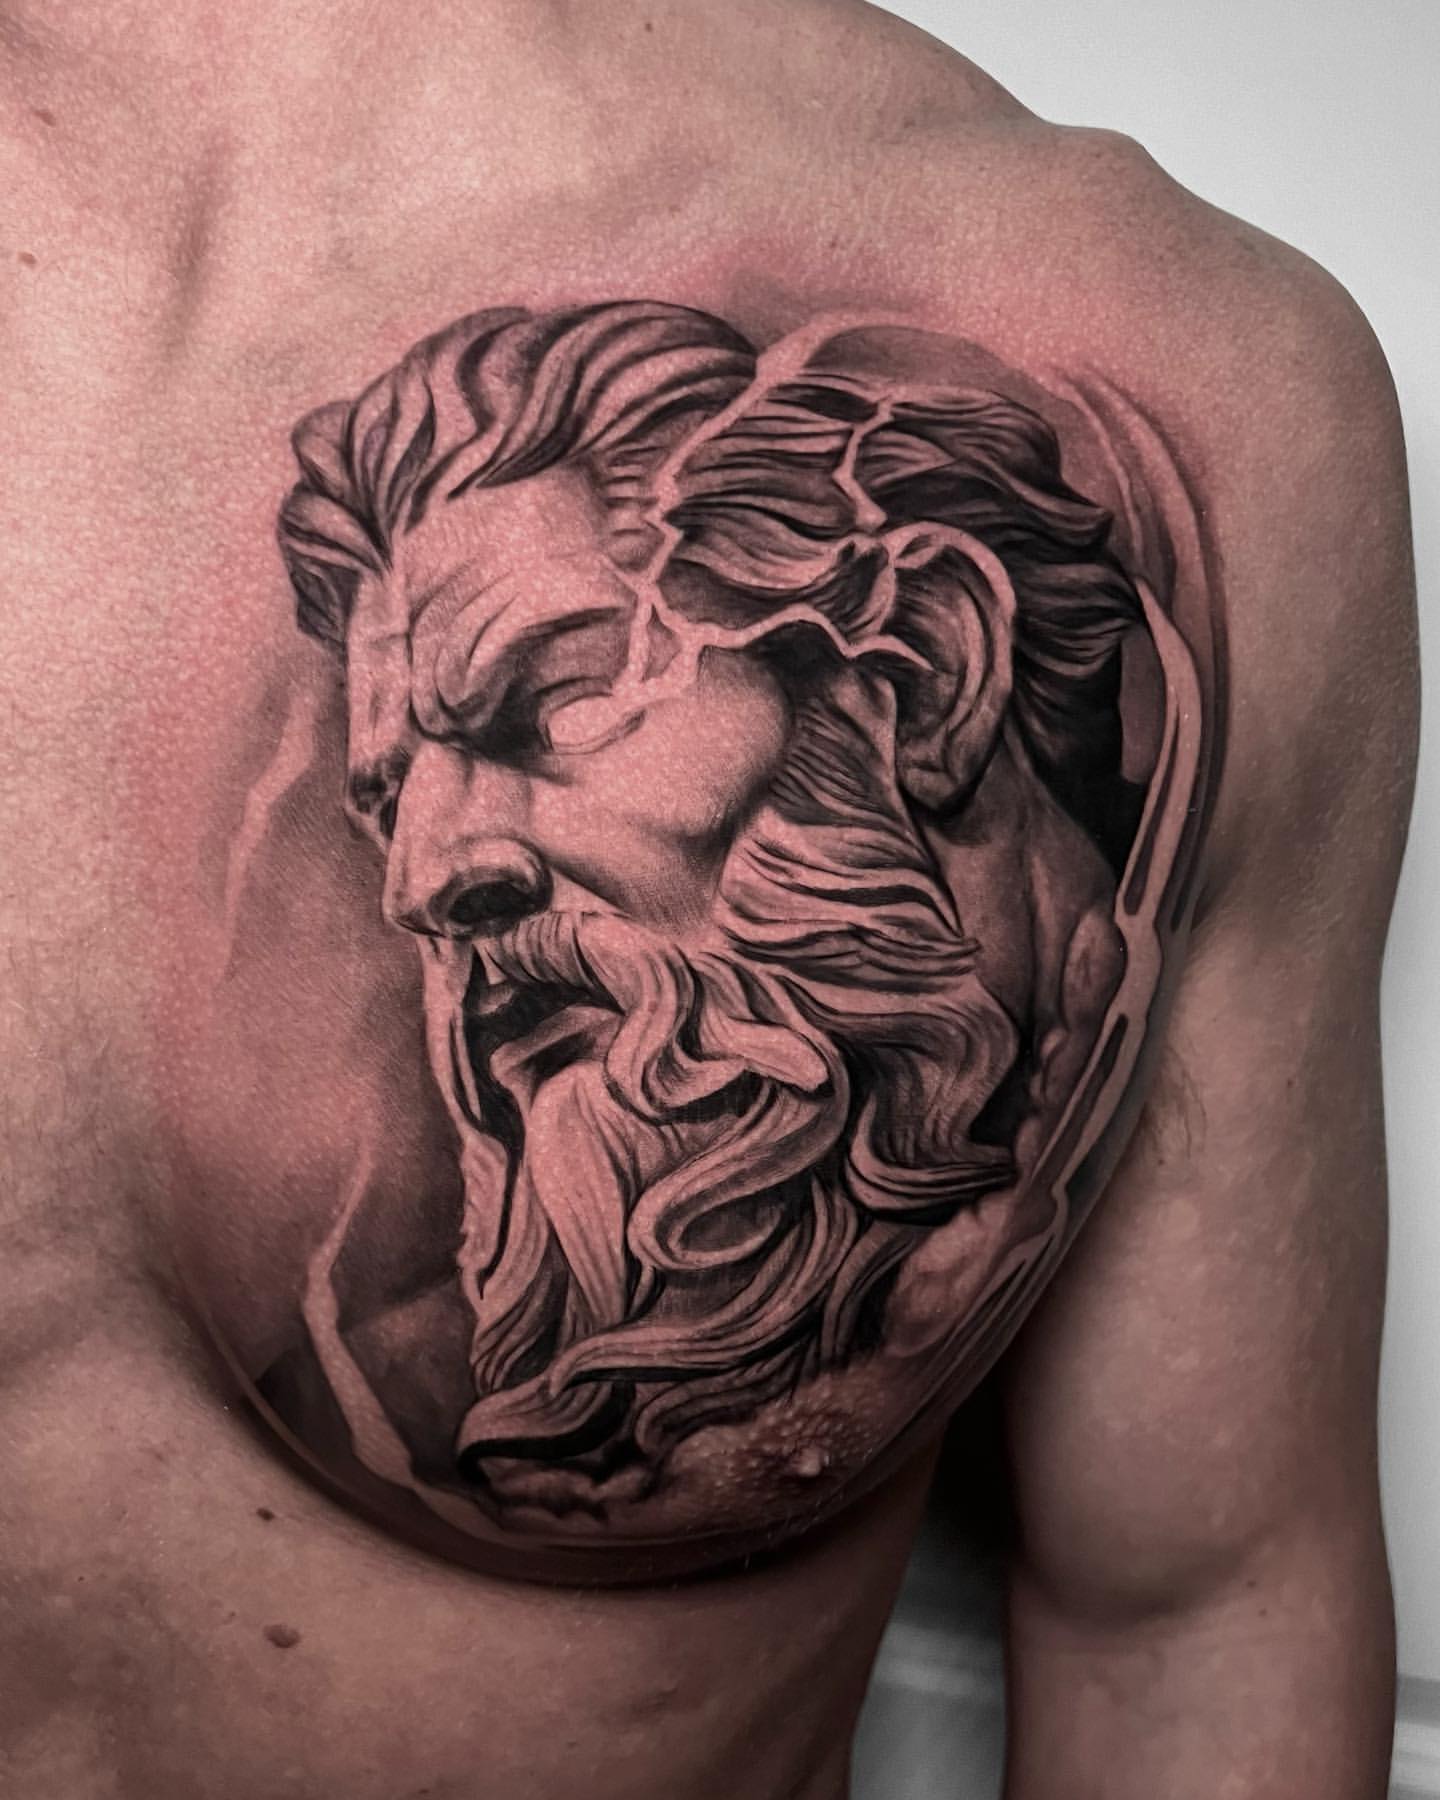 Zeus by @coldgraytattoo - Tattoogrid.net